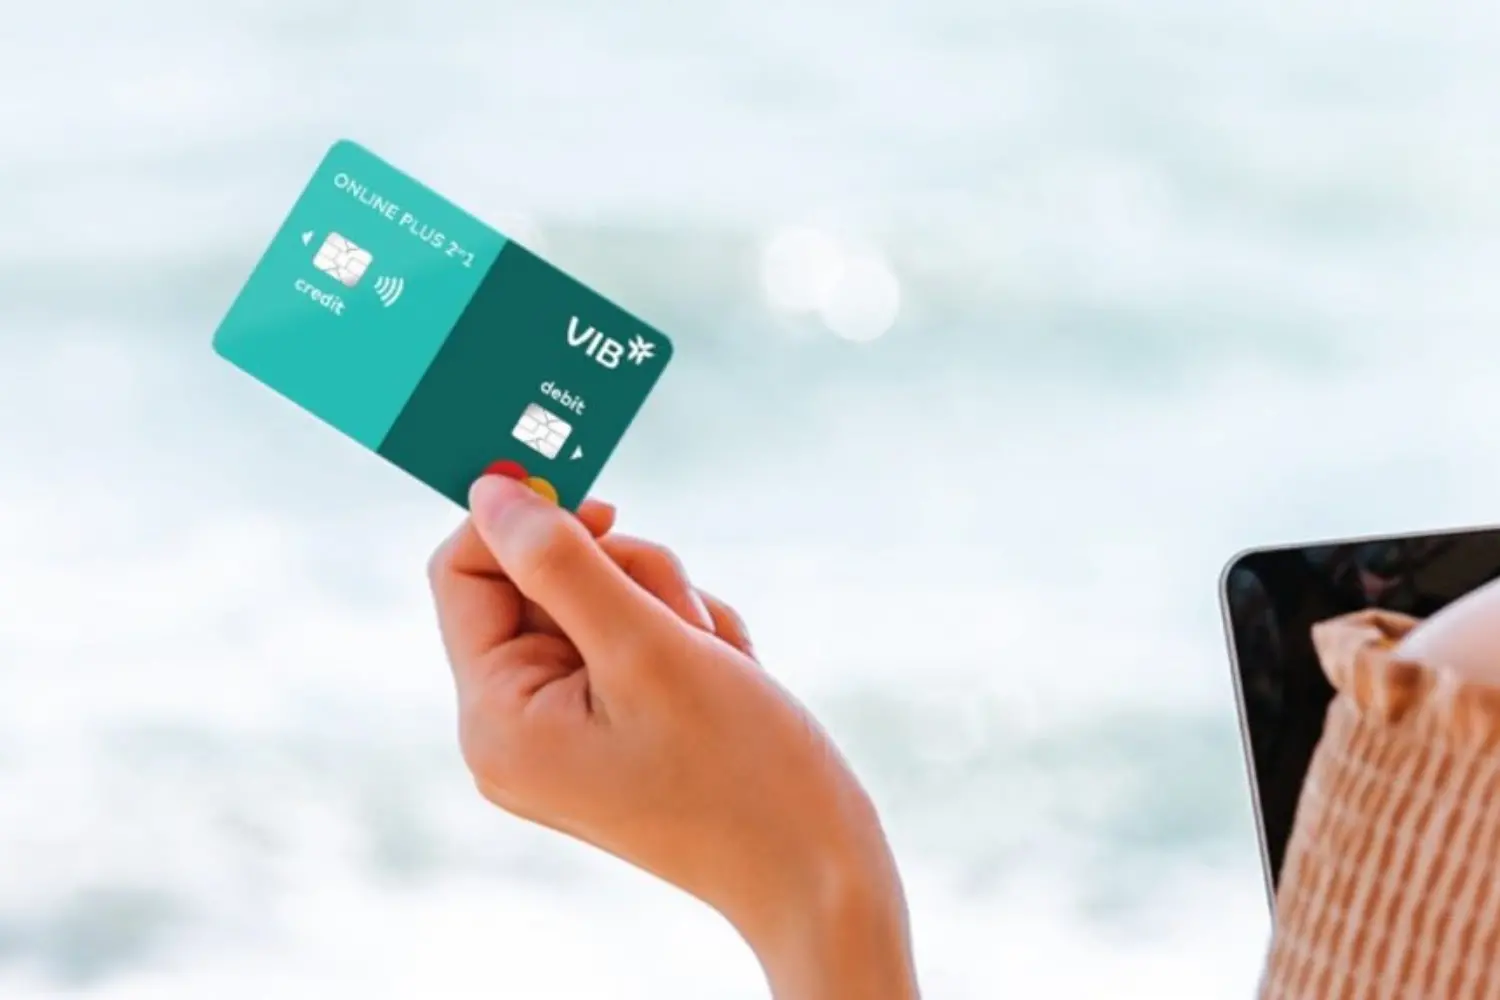 Tại VIB, thẻ tín dụng có thời hạn miễn lãi lên đến 55 ngày.